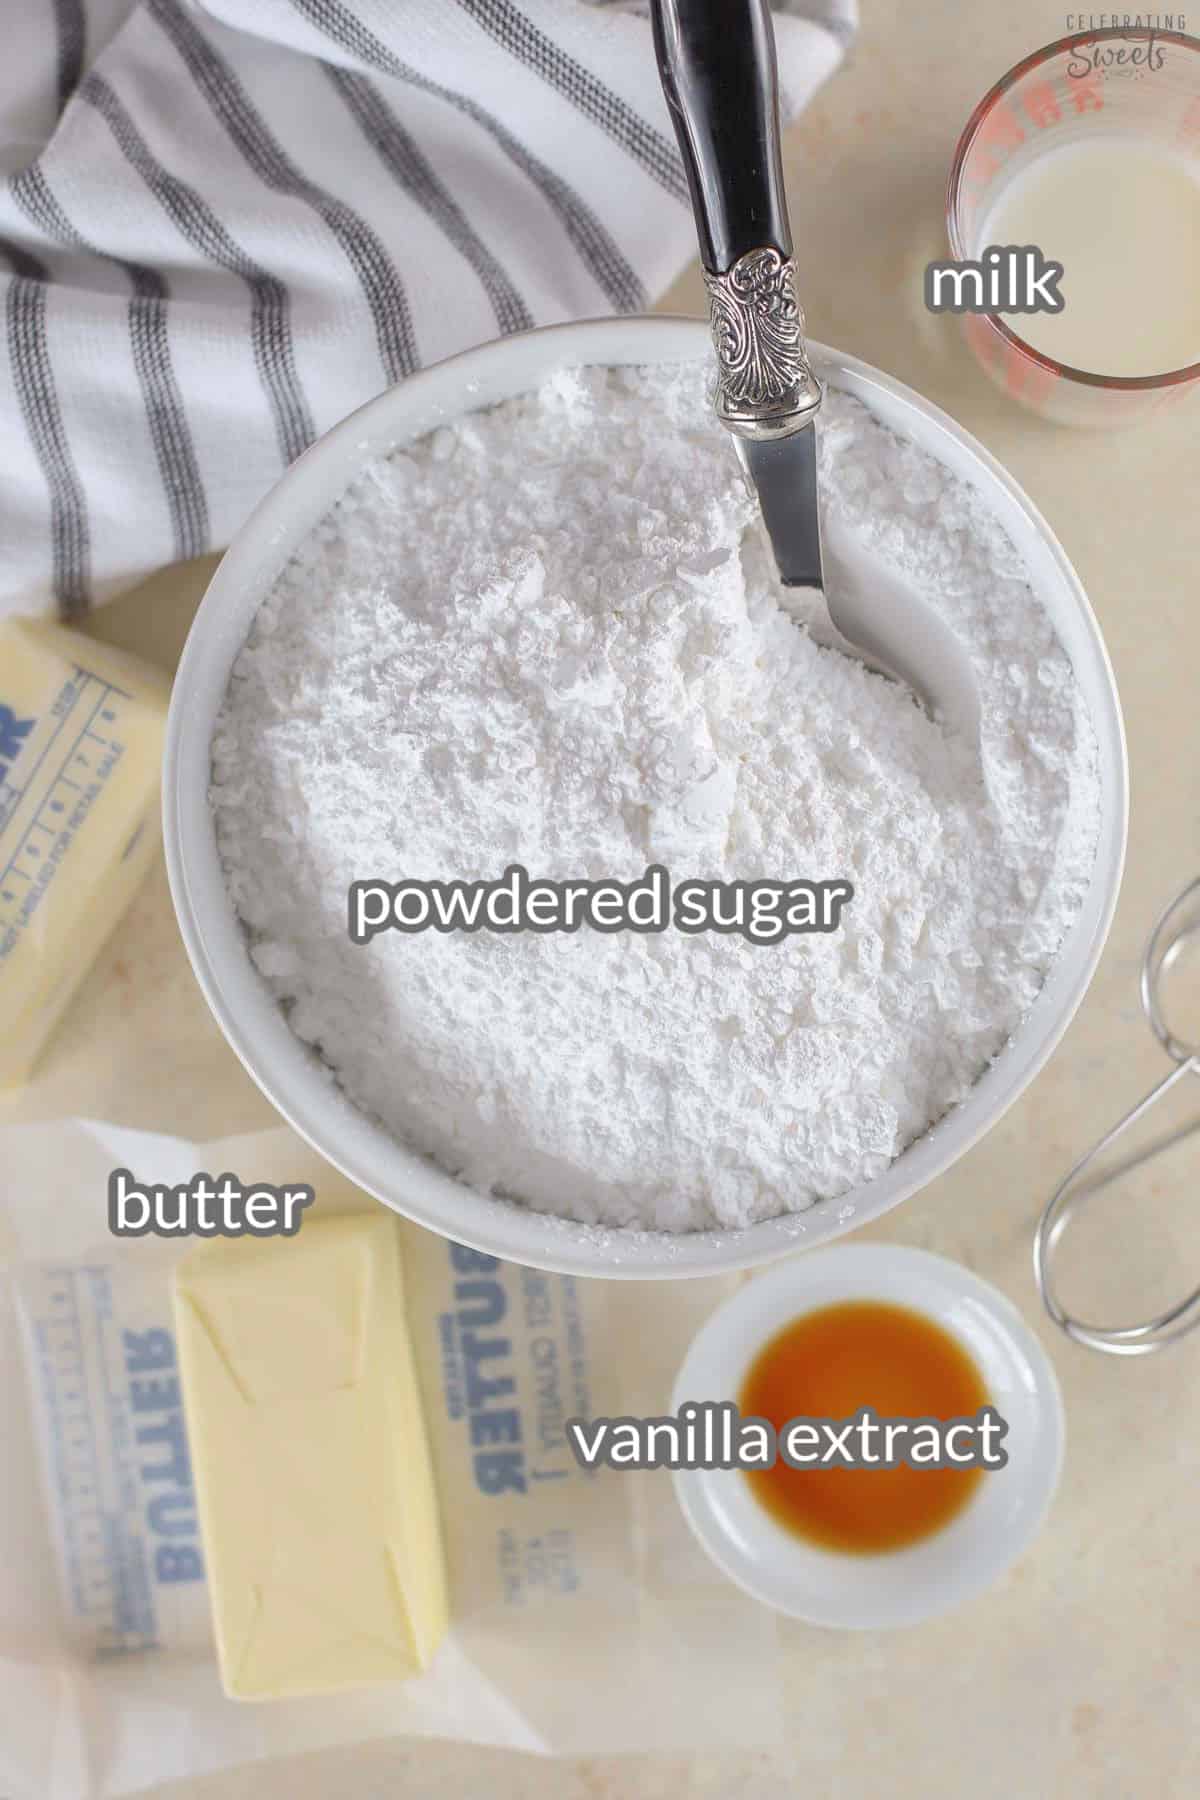 Ingredients for vanilla buttercream frosting (butter, vanilla, powdered sugar, milk).